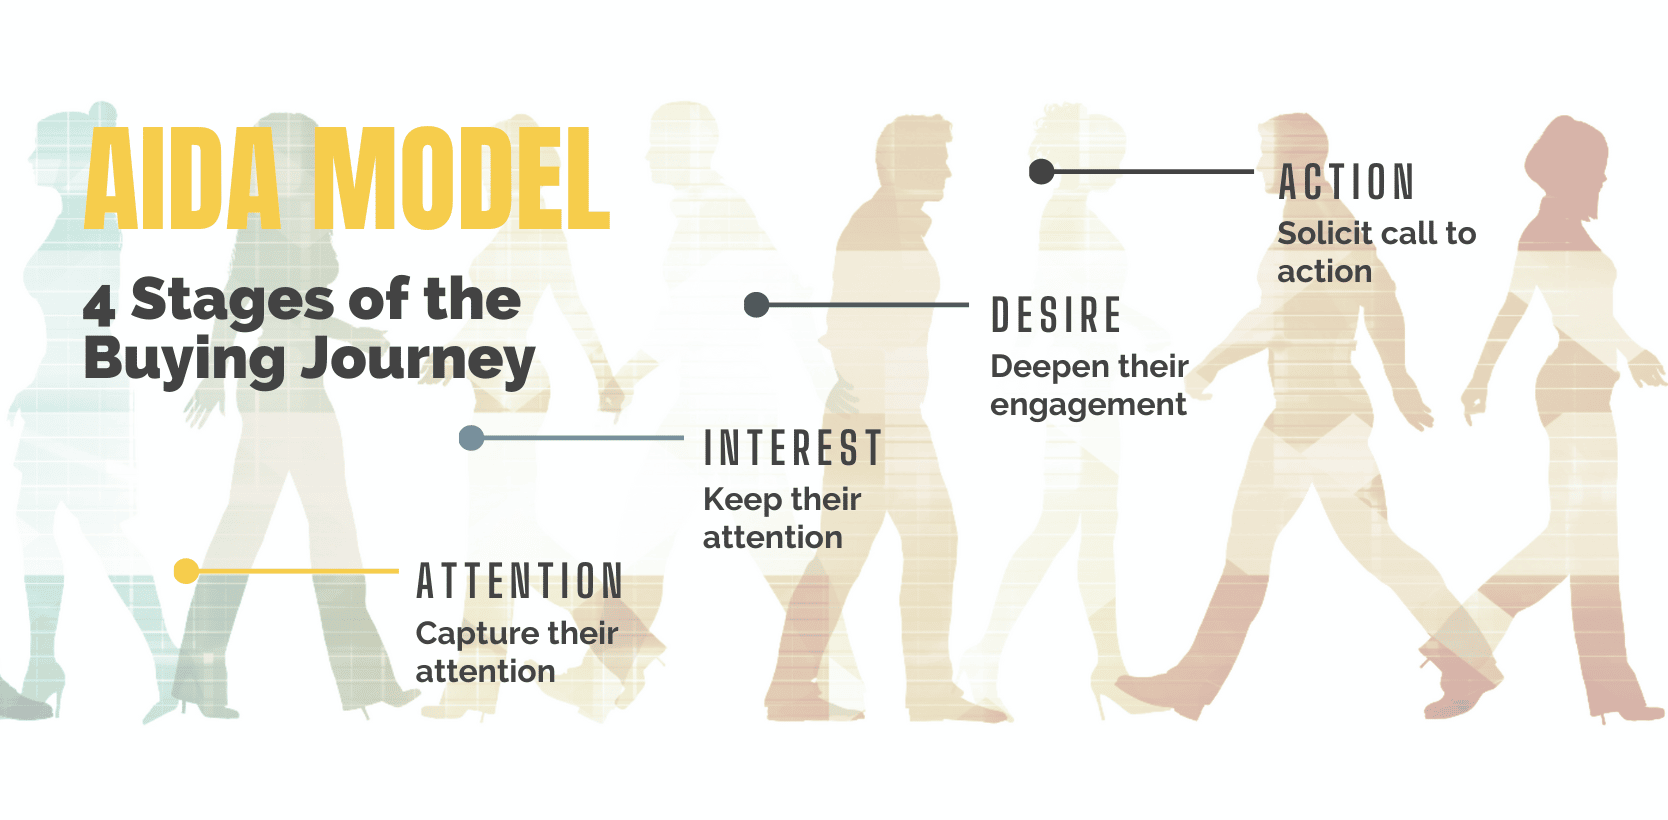 AIDA model explained